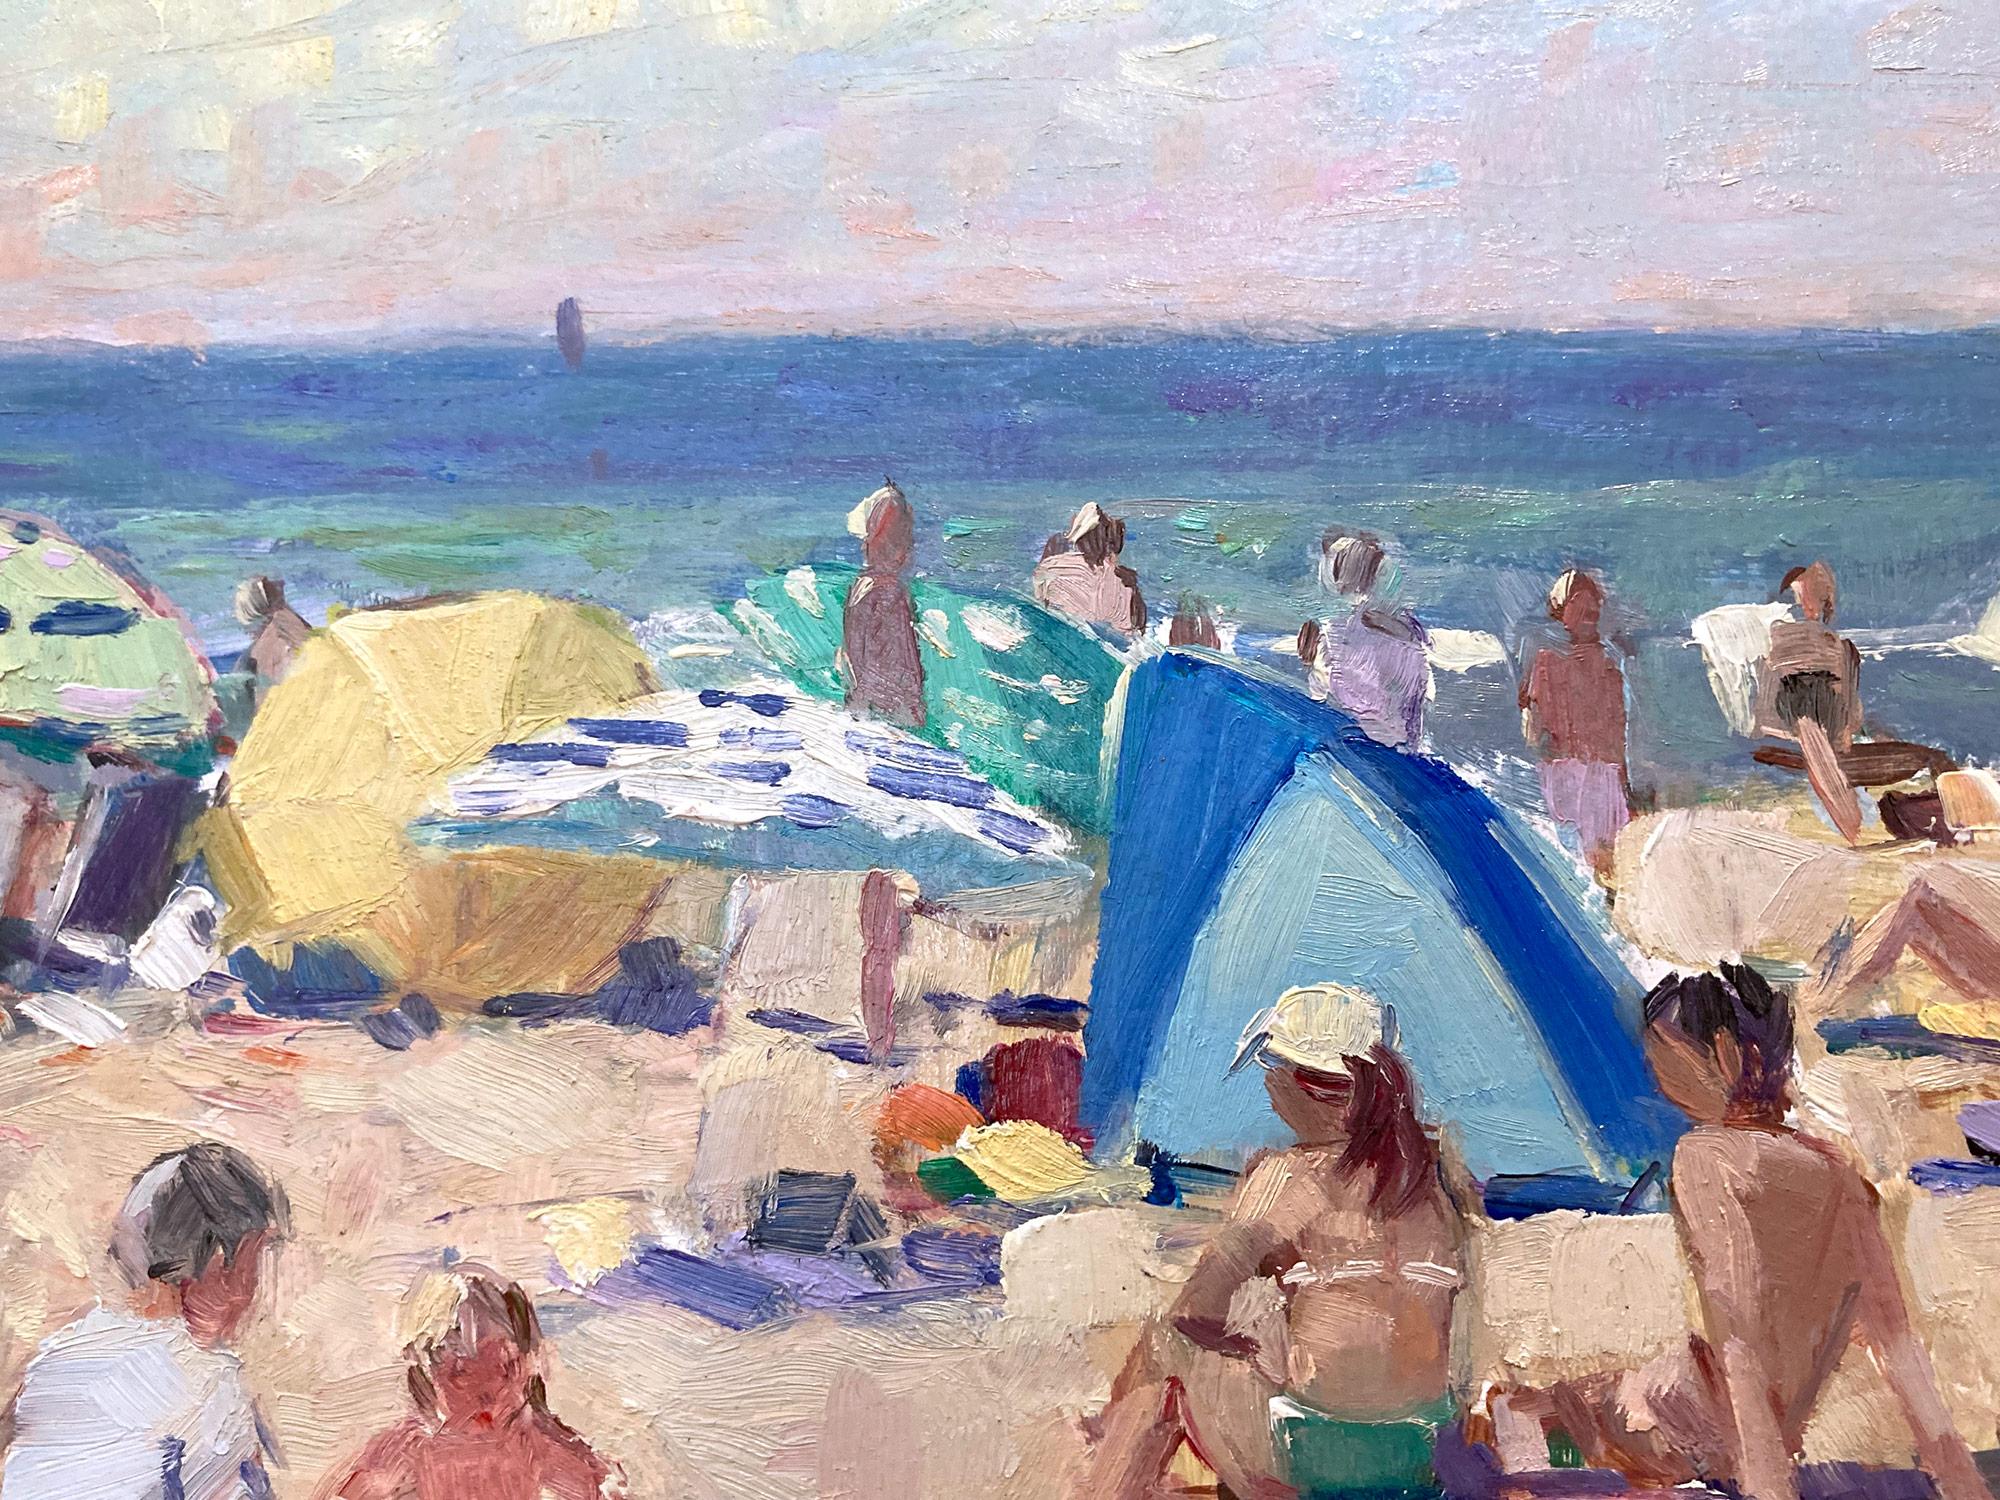 Cette captivante scène de plage d'un jour d'été est un exemple remarquable de la véritable passion de Van der Plas pour les peintures de genre en plein air. Une scène de plage merveilleusement riche exécutée au 21e siècle représentant des